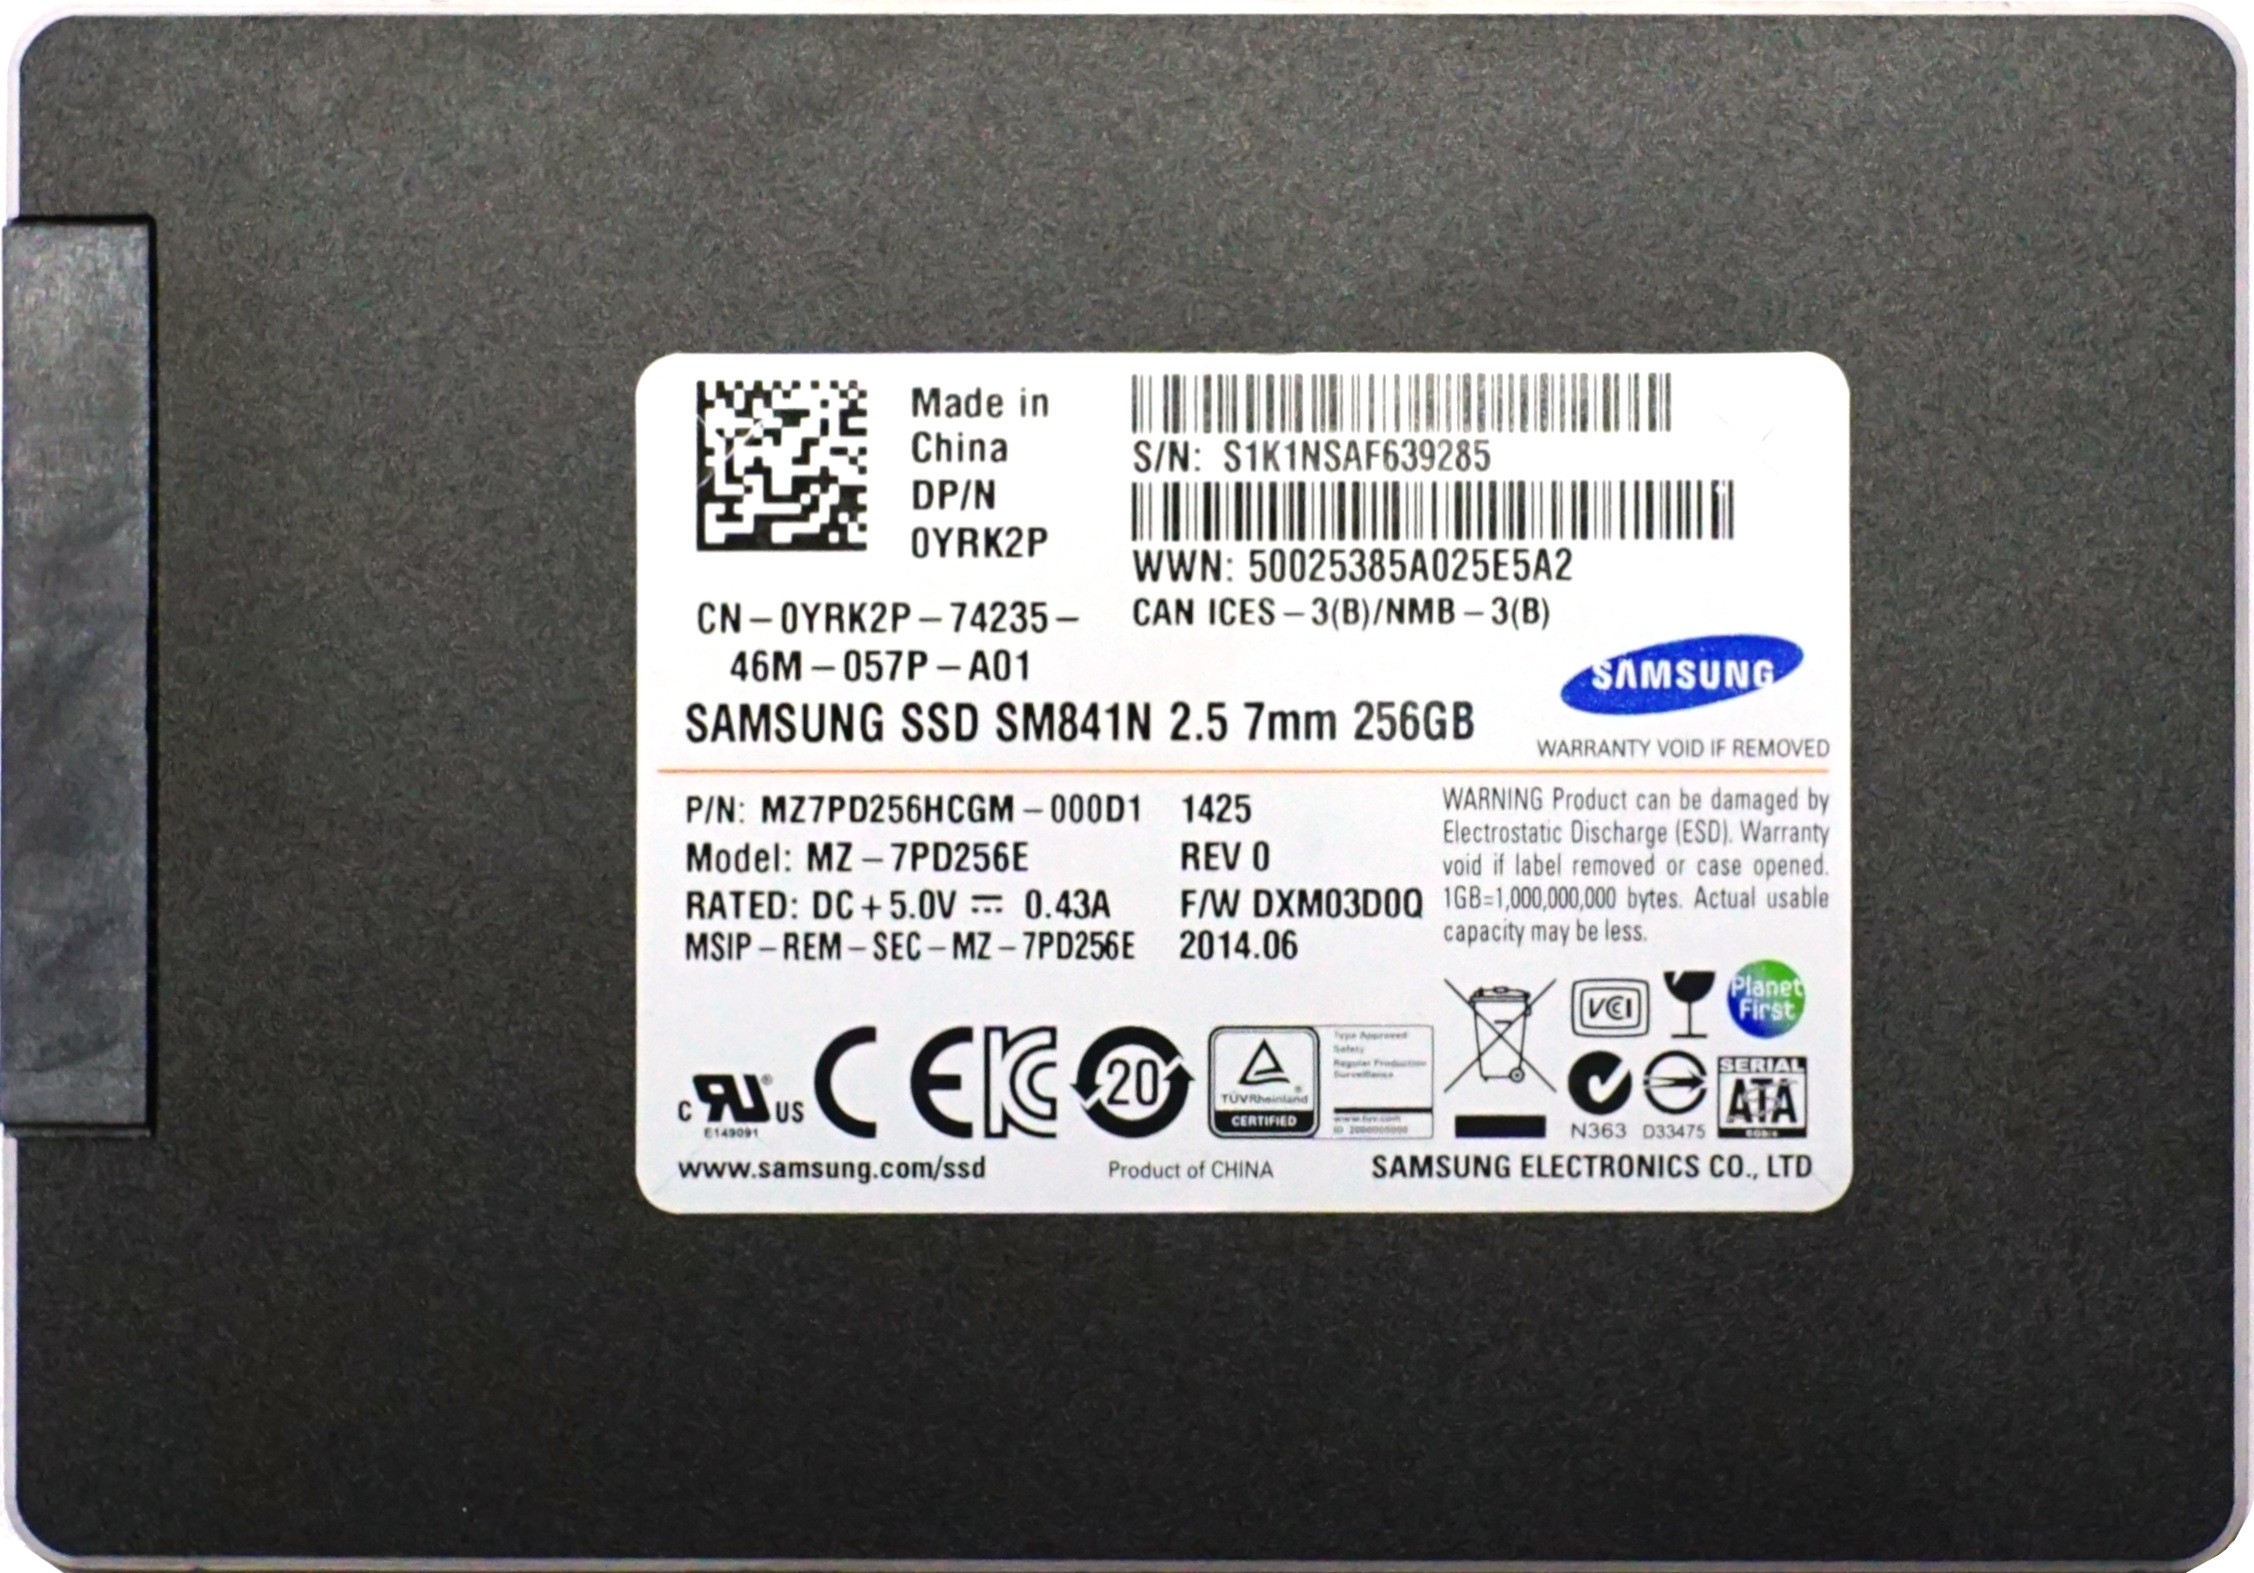 Dell (YRK2P) 256GB SATA III (SFF) 6Gb/s SSD